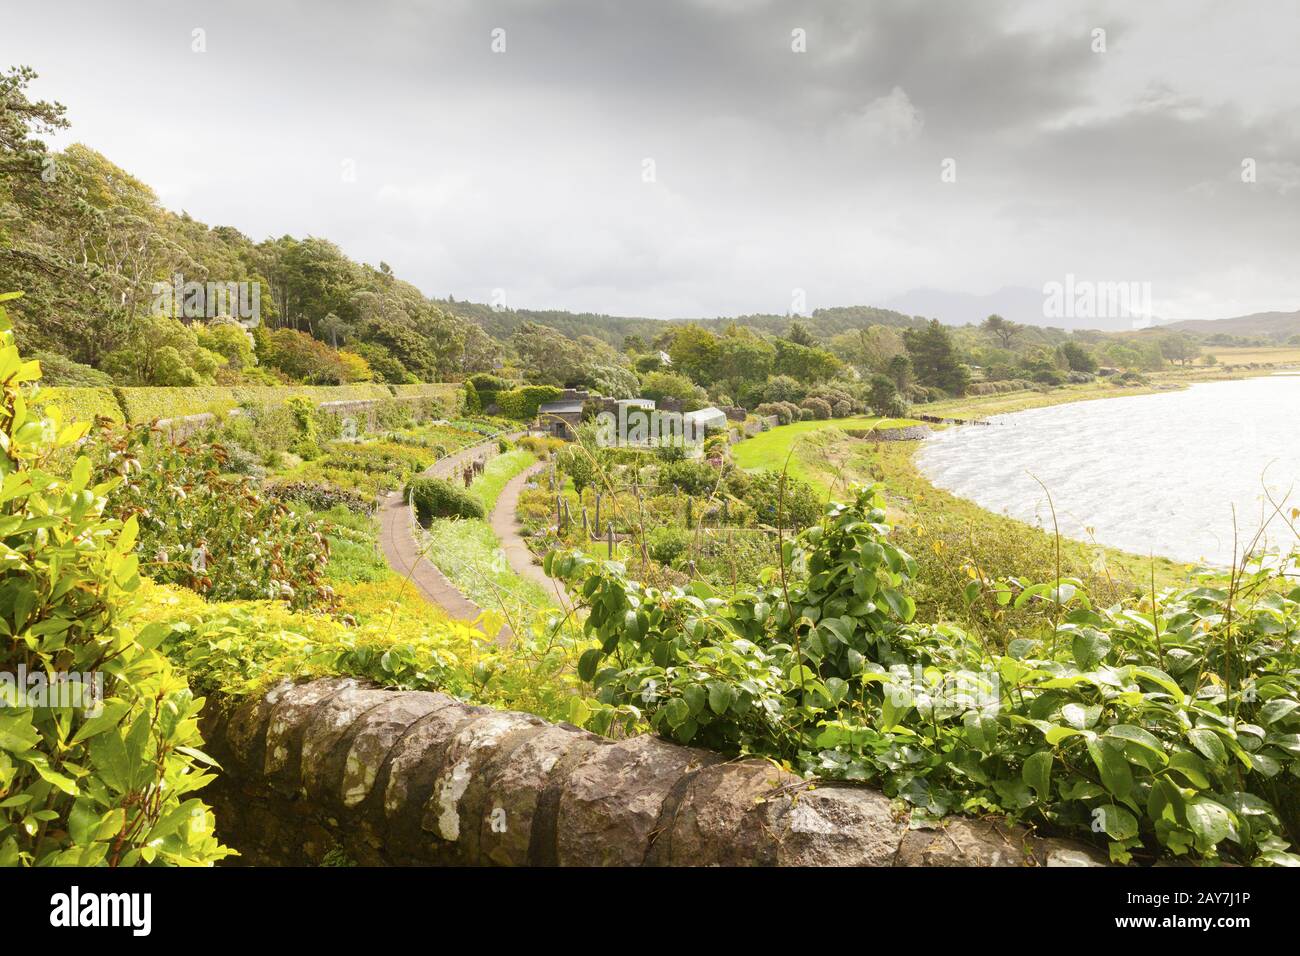 Inverewe Garden Escocia con una gran cantidad de plantas endémicas creciendo en terrazas frente al mar del norte Foto de stock